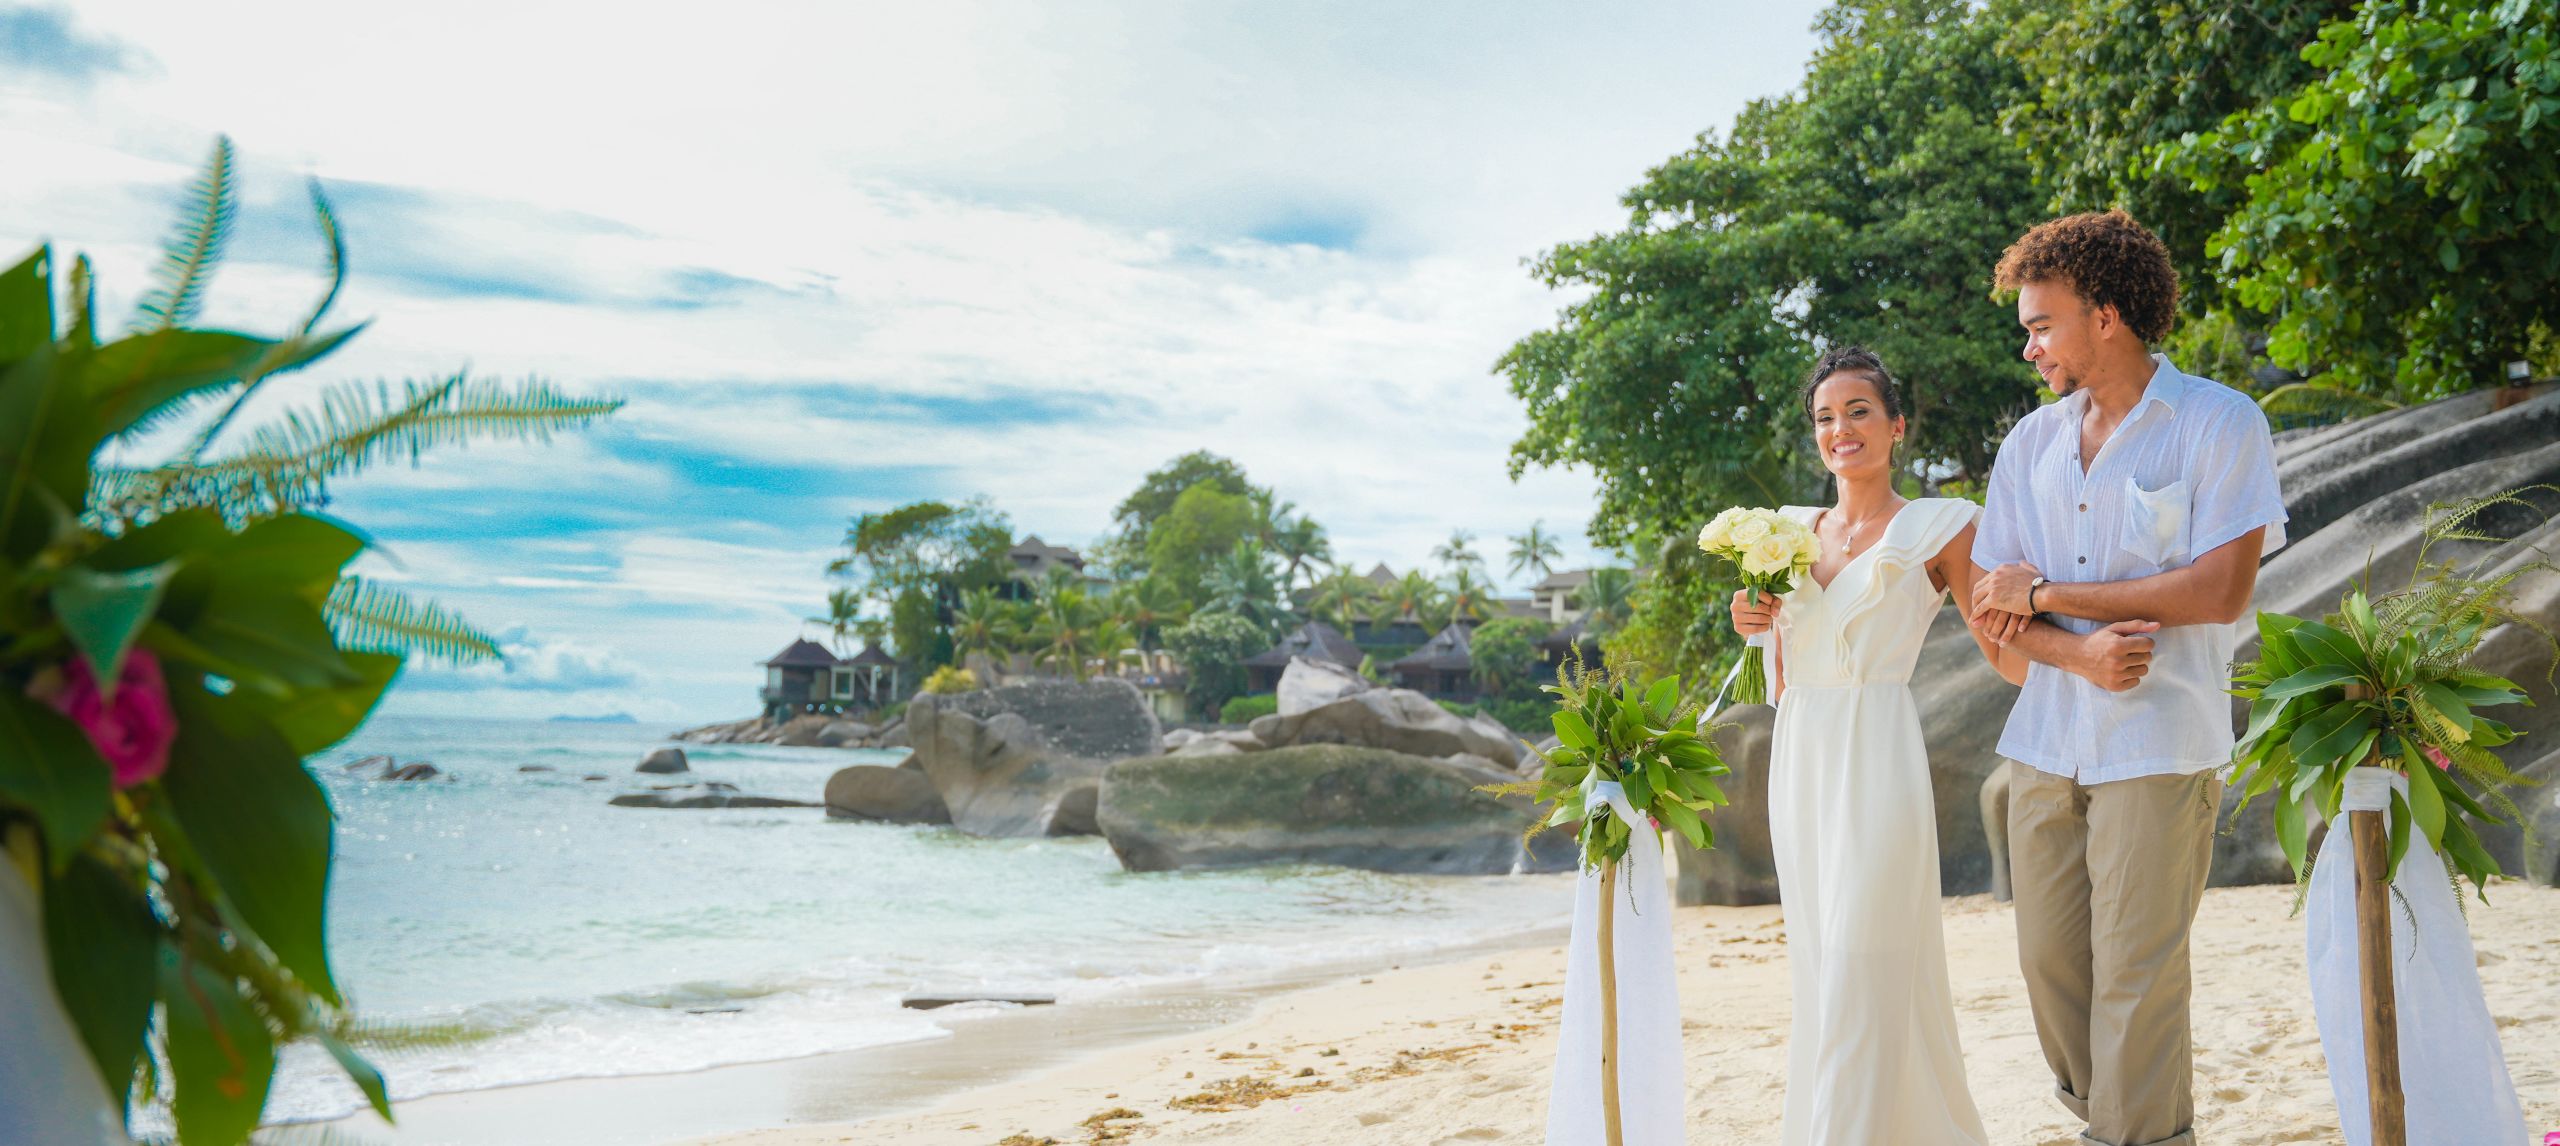 Une mariée descend l'île bordée de fleurs sur la plage.